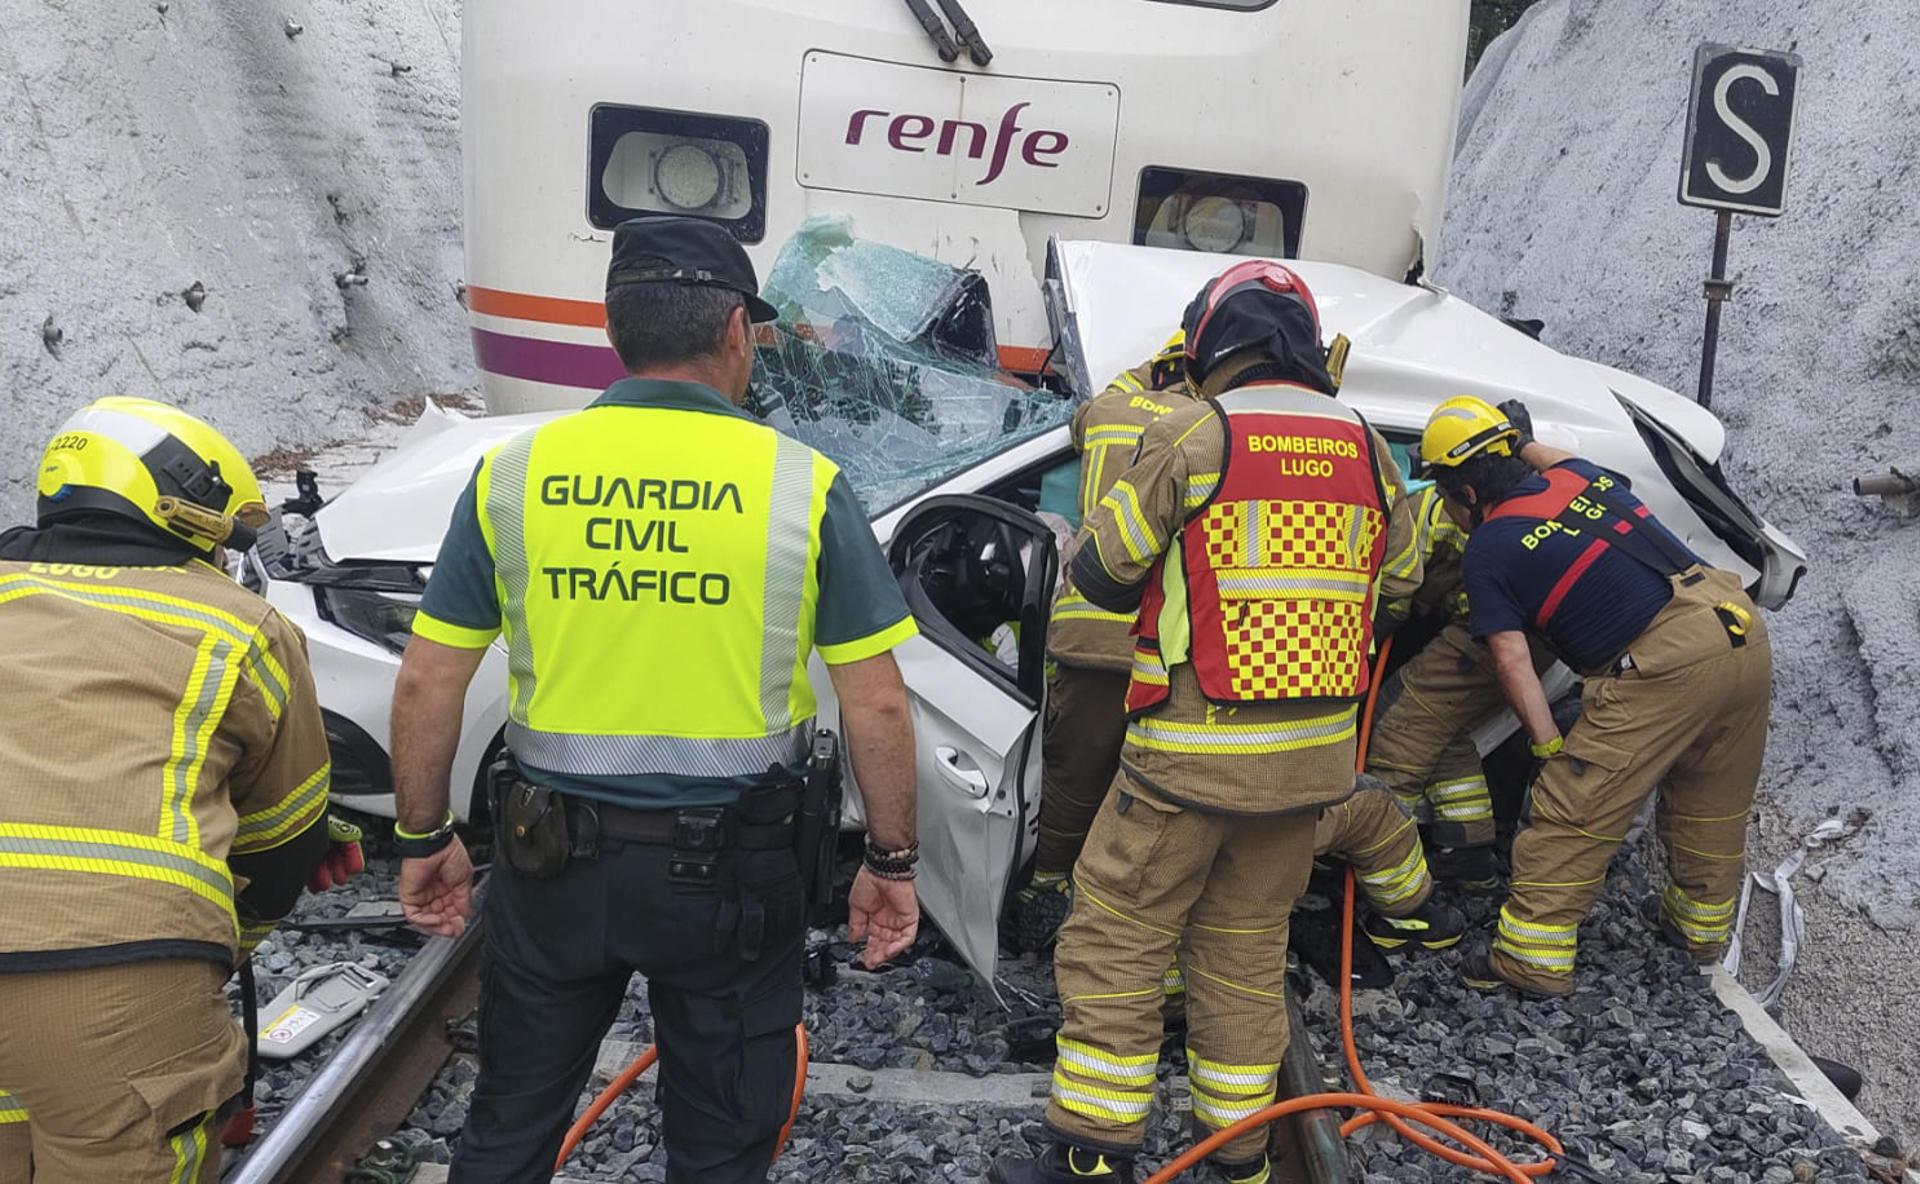 Una persona ha fallecido y otras dos han resultado heridas de gravedad en un accidente que se produjo en el lugar de Recimil, en Lugo, al arrollar un tren a un turismo cuando cruzaba por un paso a nivel, según la información facilitada a EFE por el Centro Integrado de Atención ás Emerxencias de Galicia (CIAE). EFE/Guardia Civil/SOLO USO EDITORIAL/SOLO DISPONIBLE PARA ILUSTRAR LA NOTICIA QUE ACOMPAÑA (CRÉDITO OBLIGATORIO)